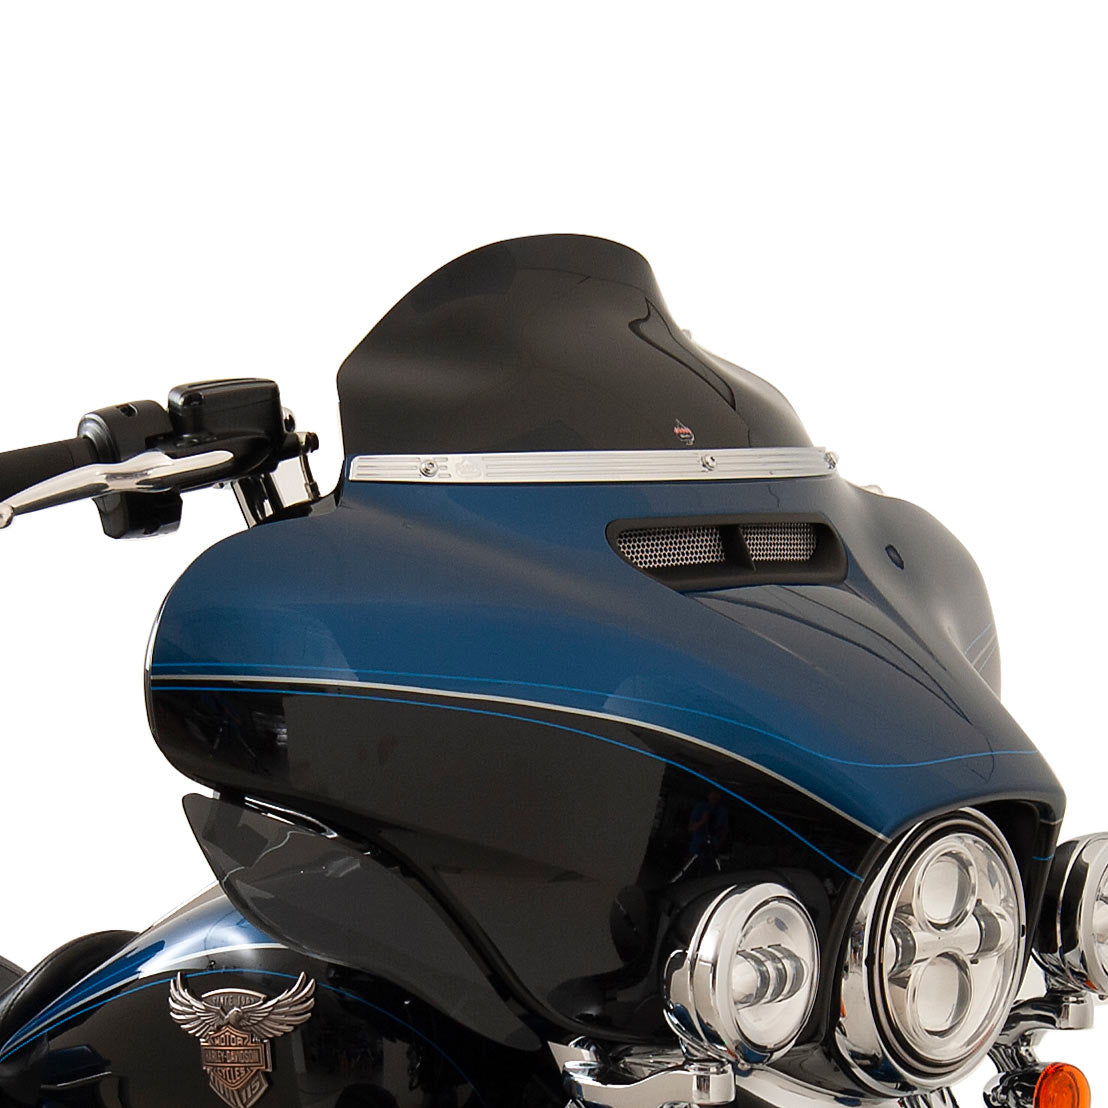 6.5" Solid Black Flare™ Windshield for 2014-2023 Harley-Davidson FLH Motorcycle Models